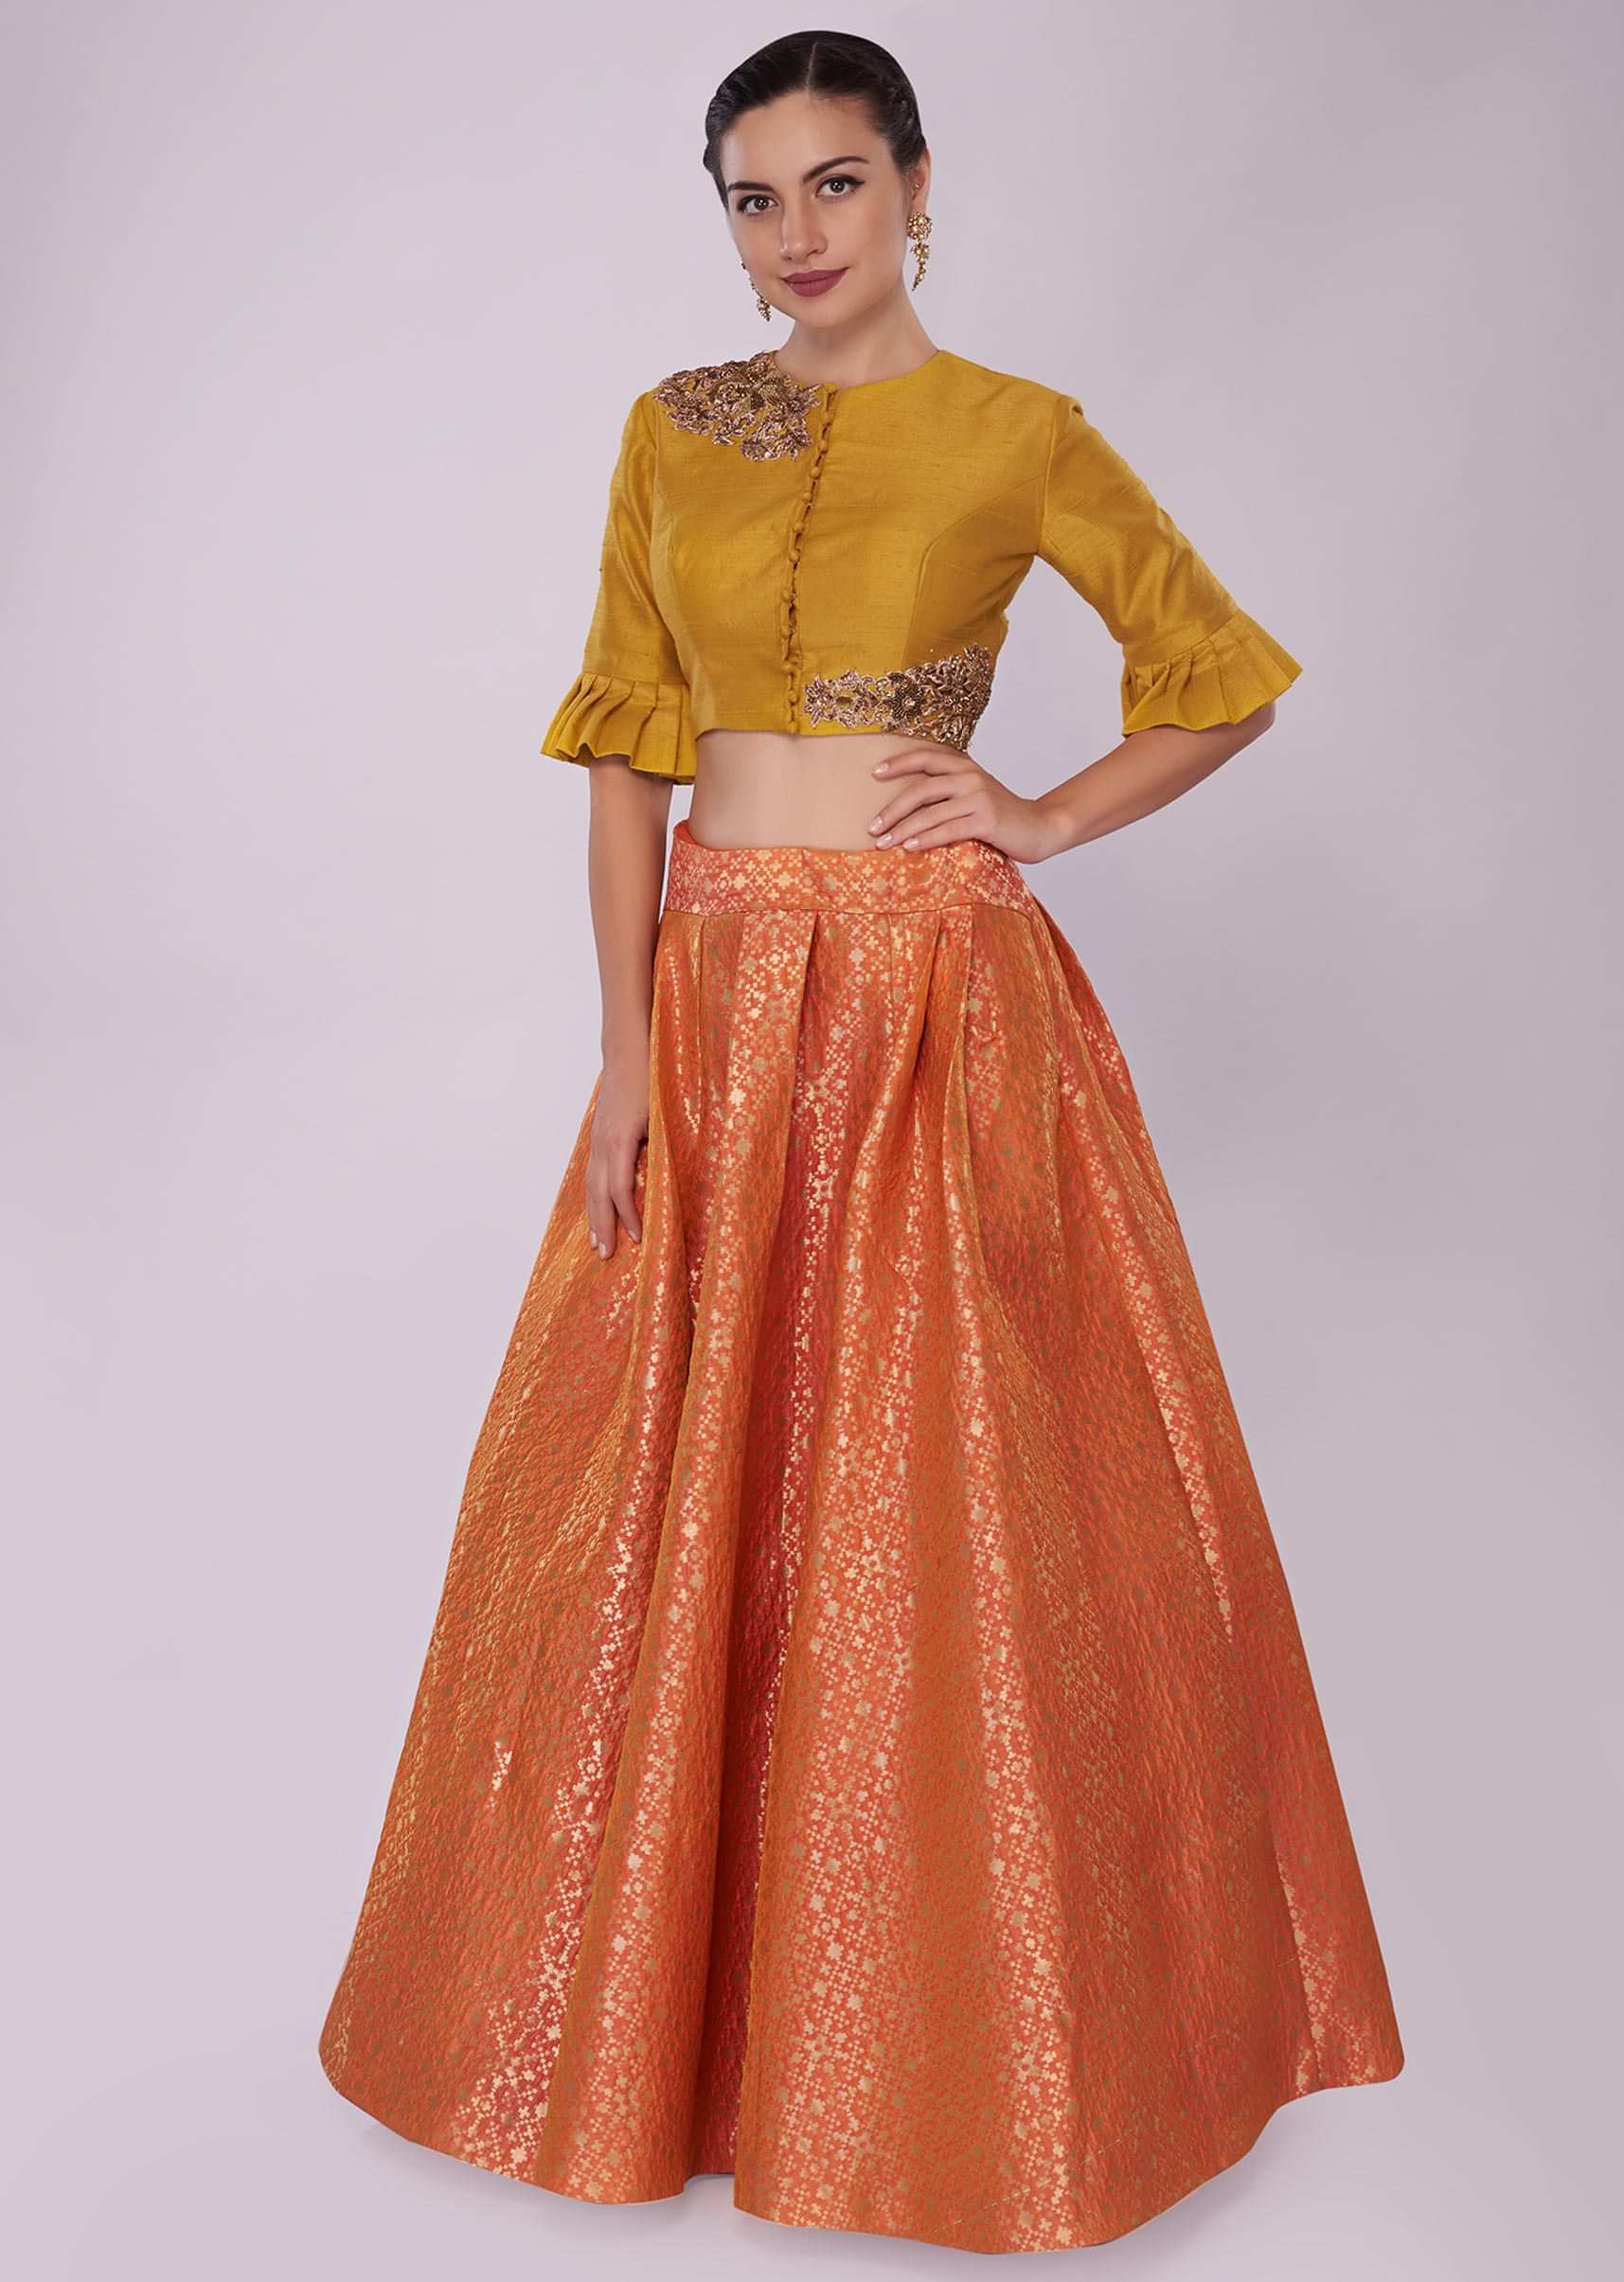 Banarasi Handloom Tussar Silk - Contrast Skirt Border Saree -  BanarasiSaree.com